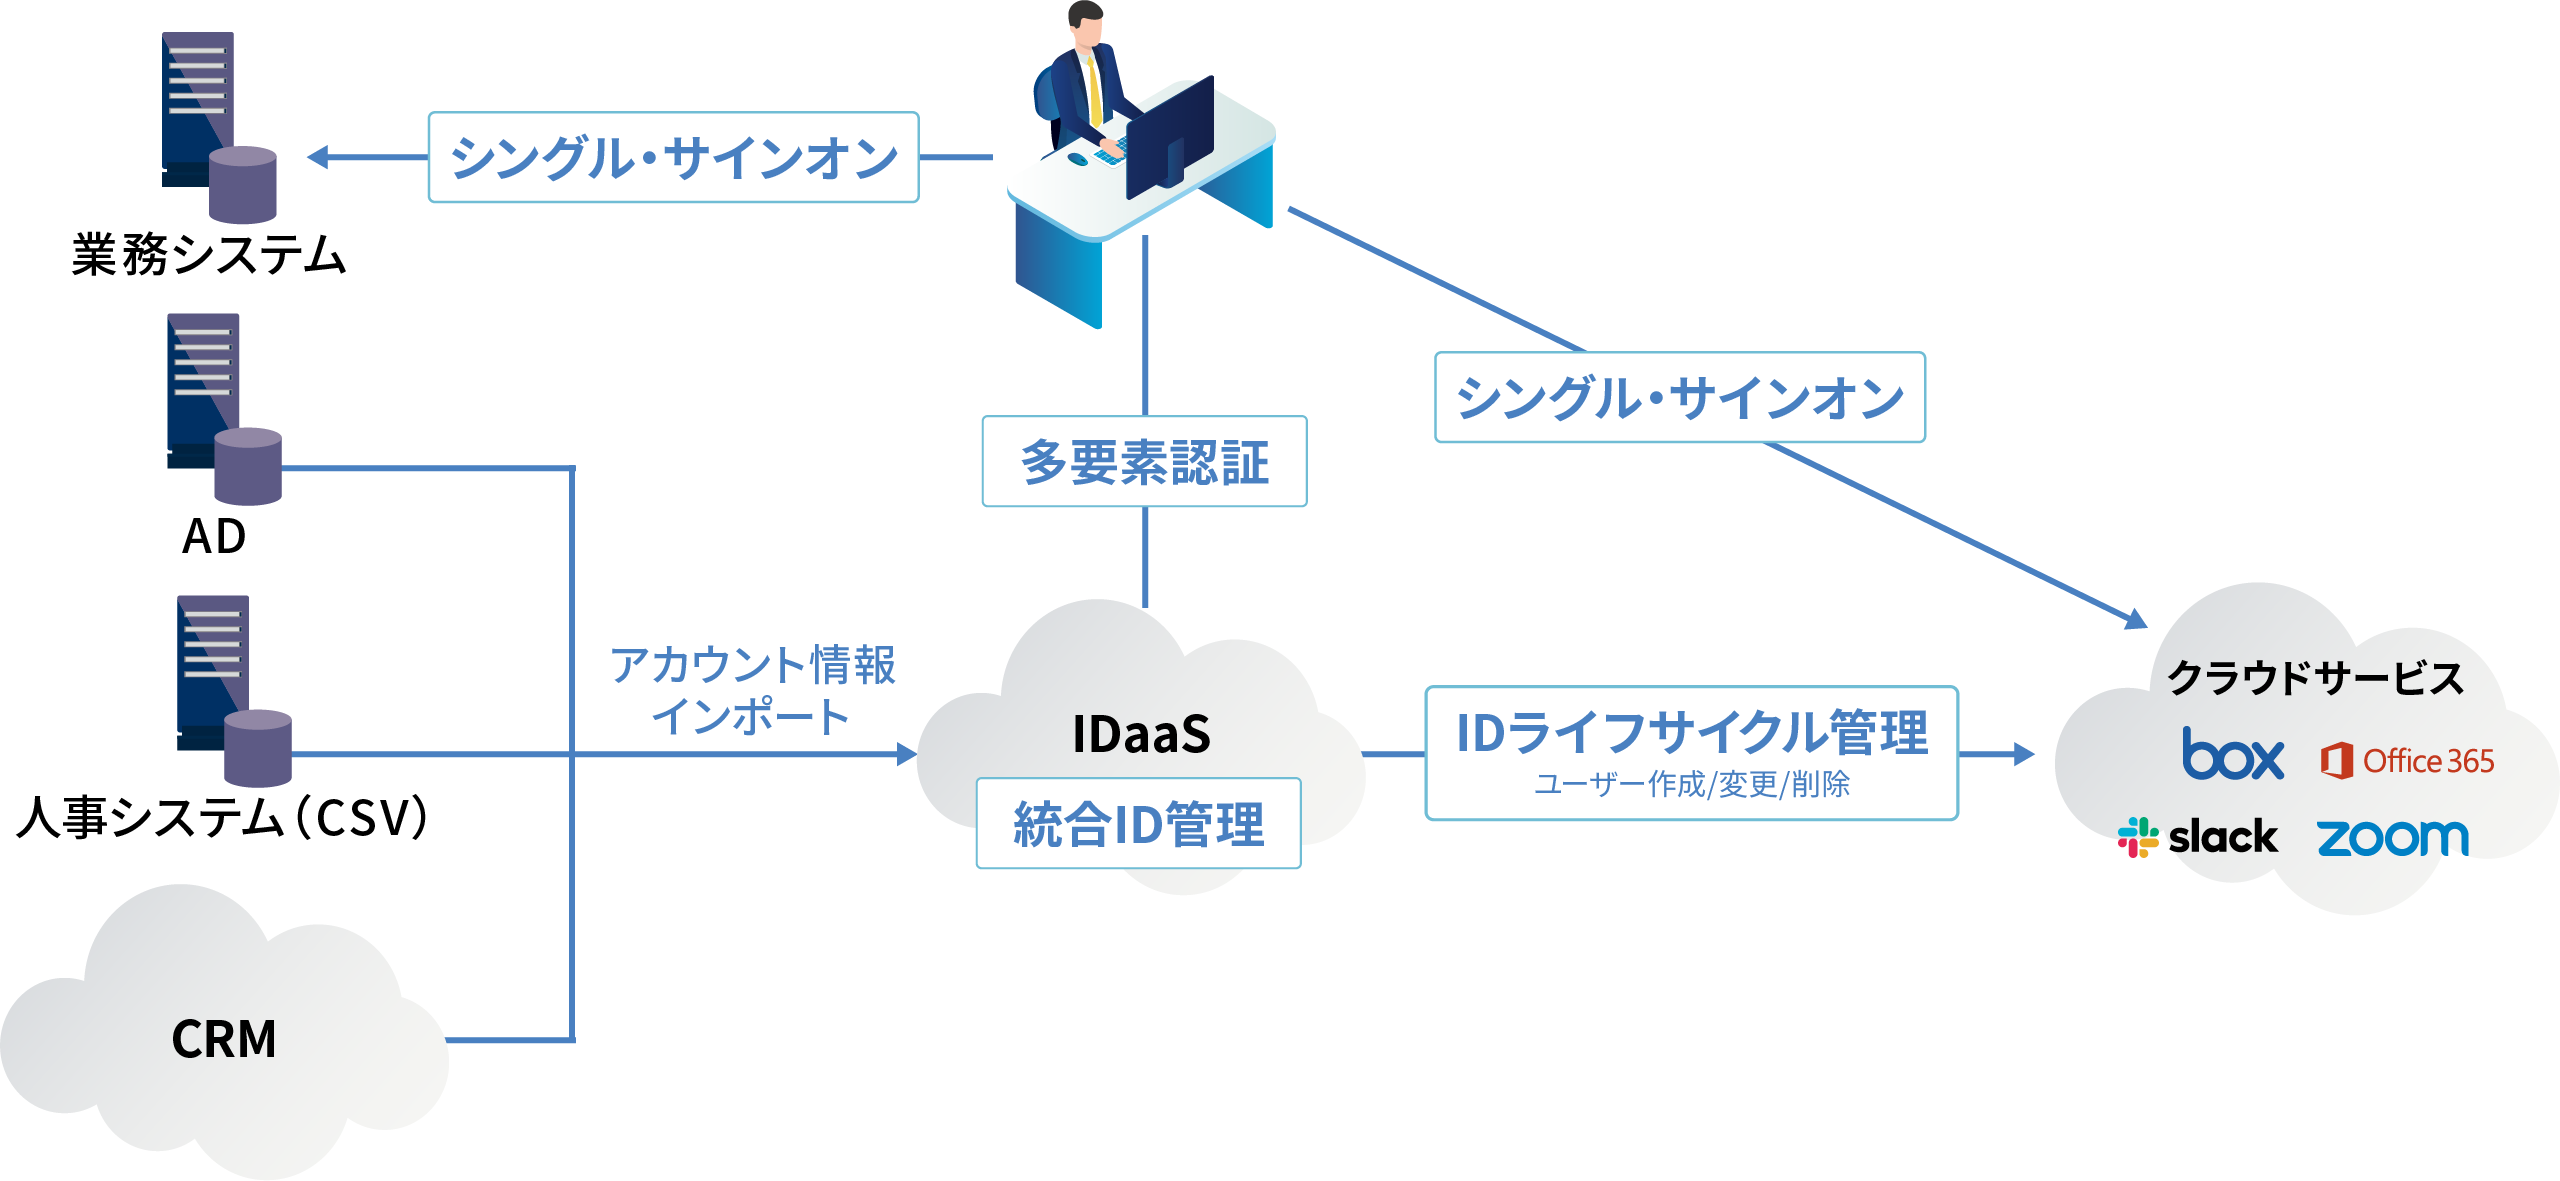 IDaaSとは、ID管理と認証・認可の機能を提供するクラウサービスです